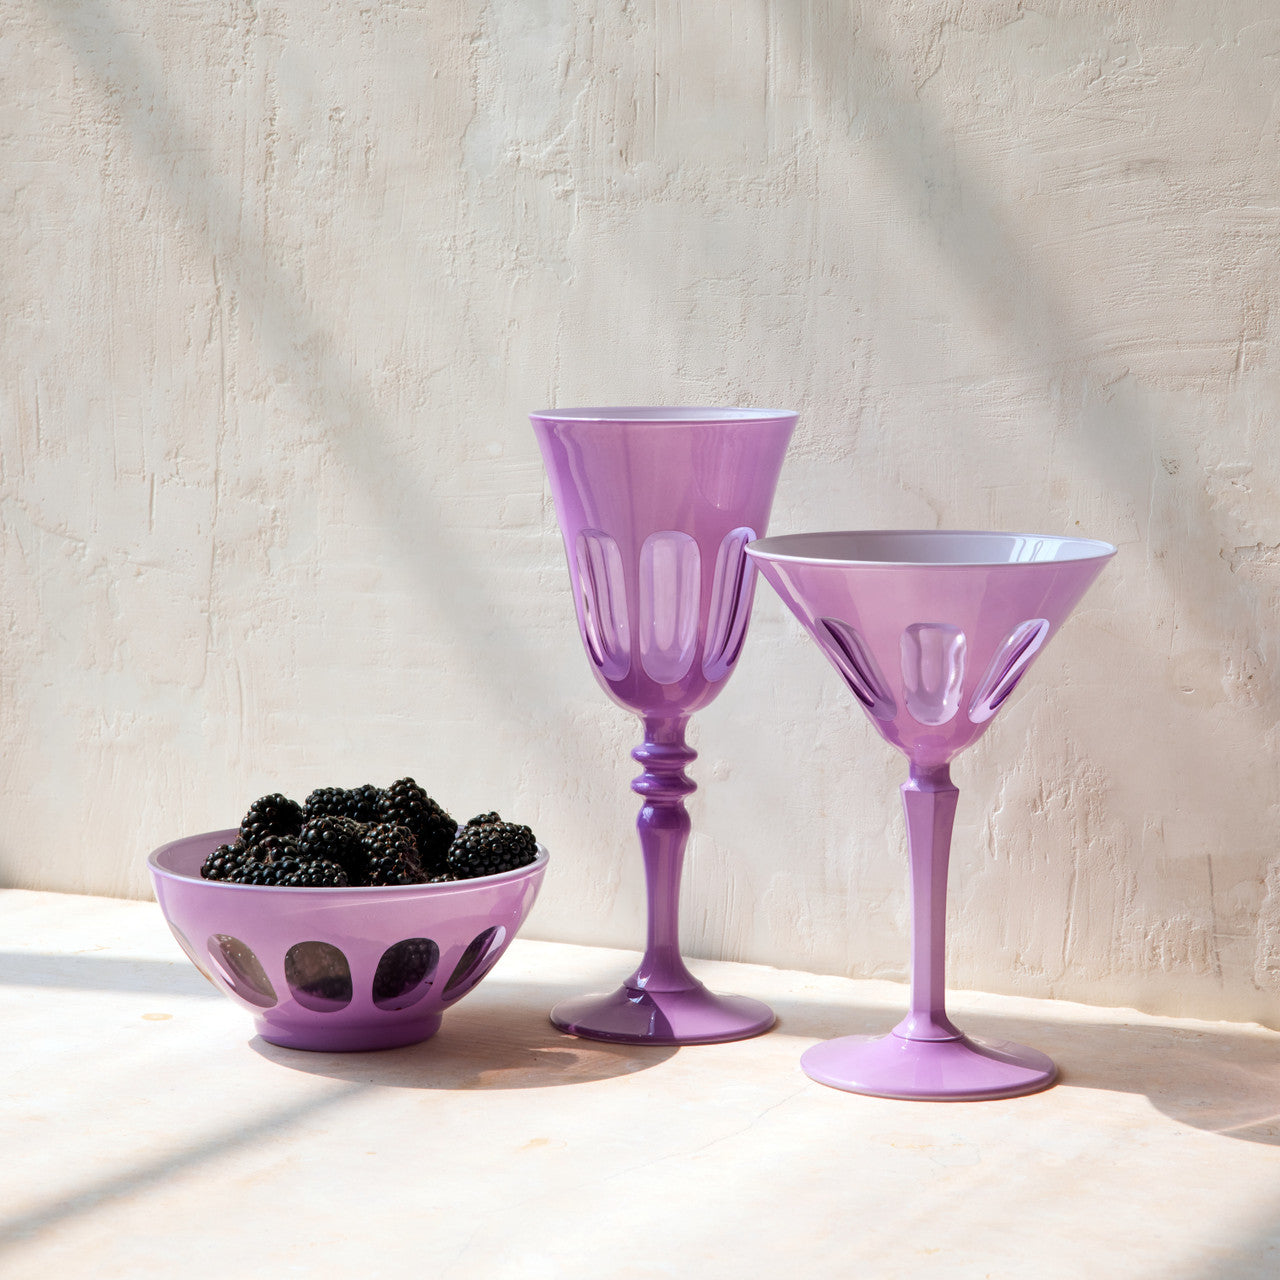 Rialto Wine Glass in Lupine